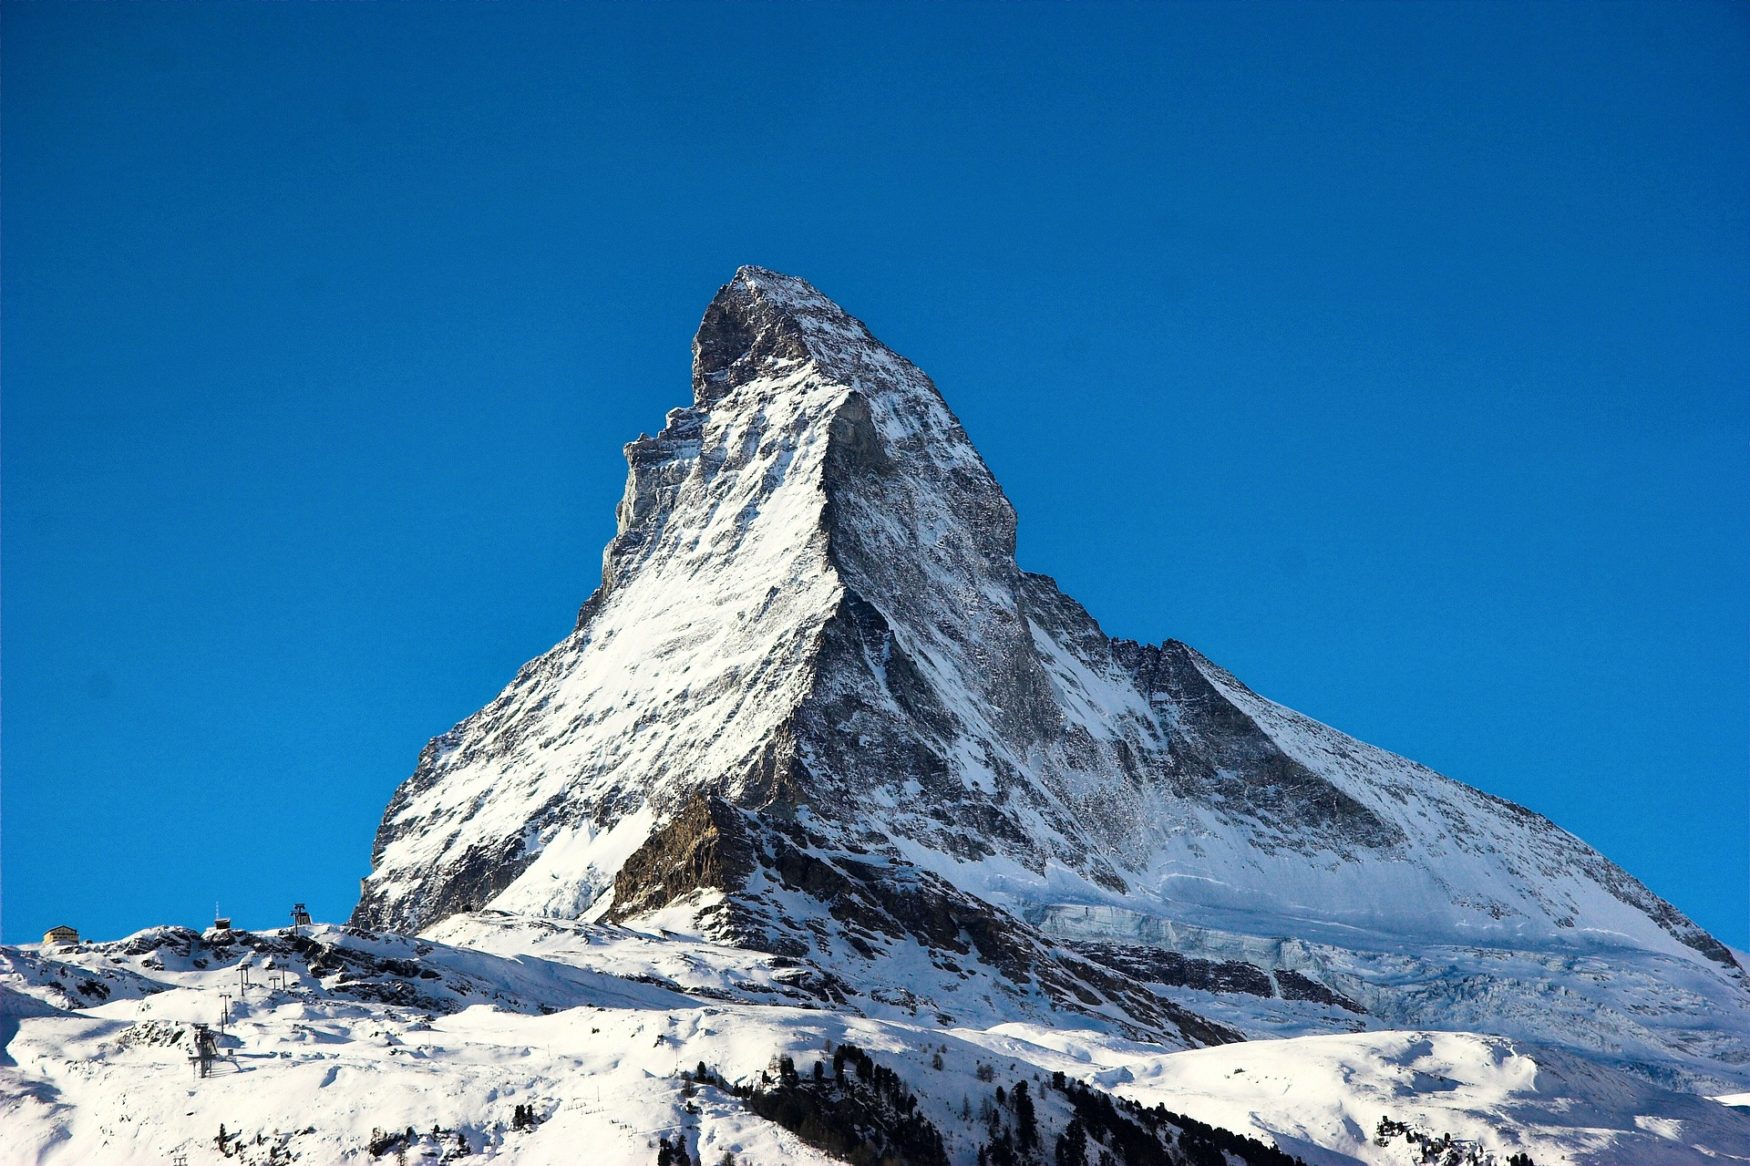 Matterhorn covered in snow